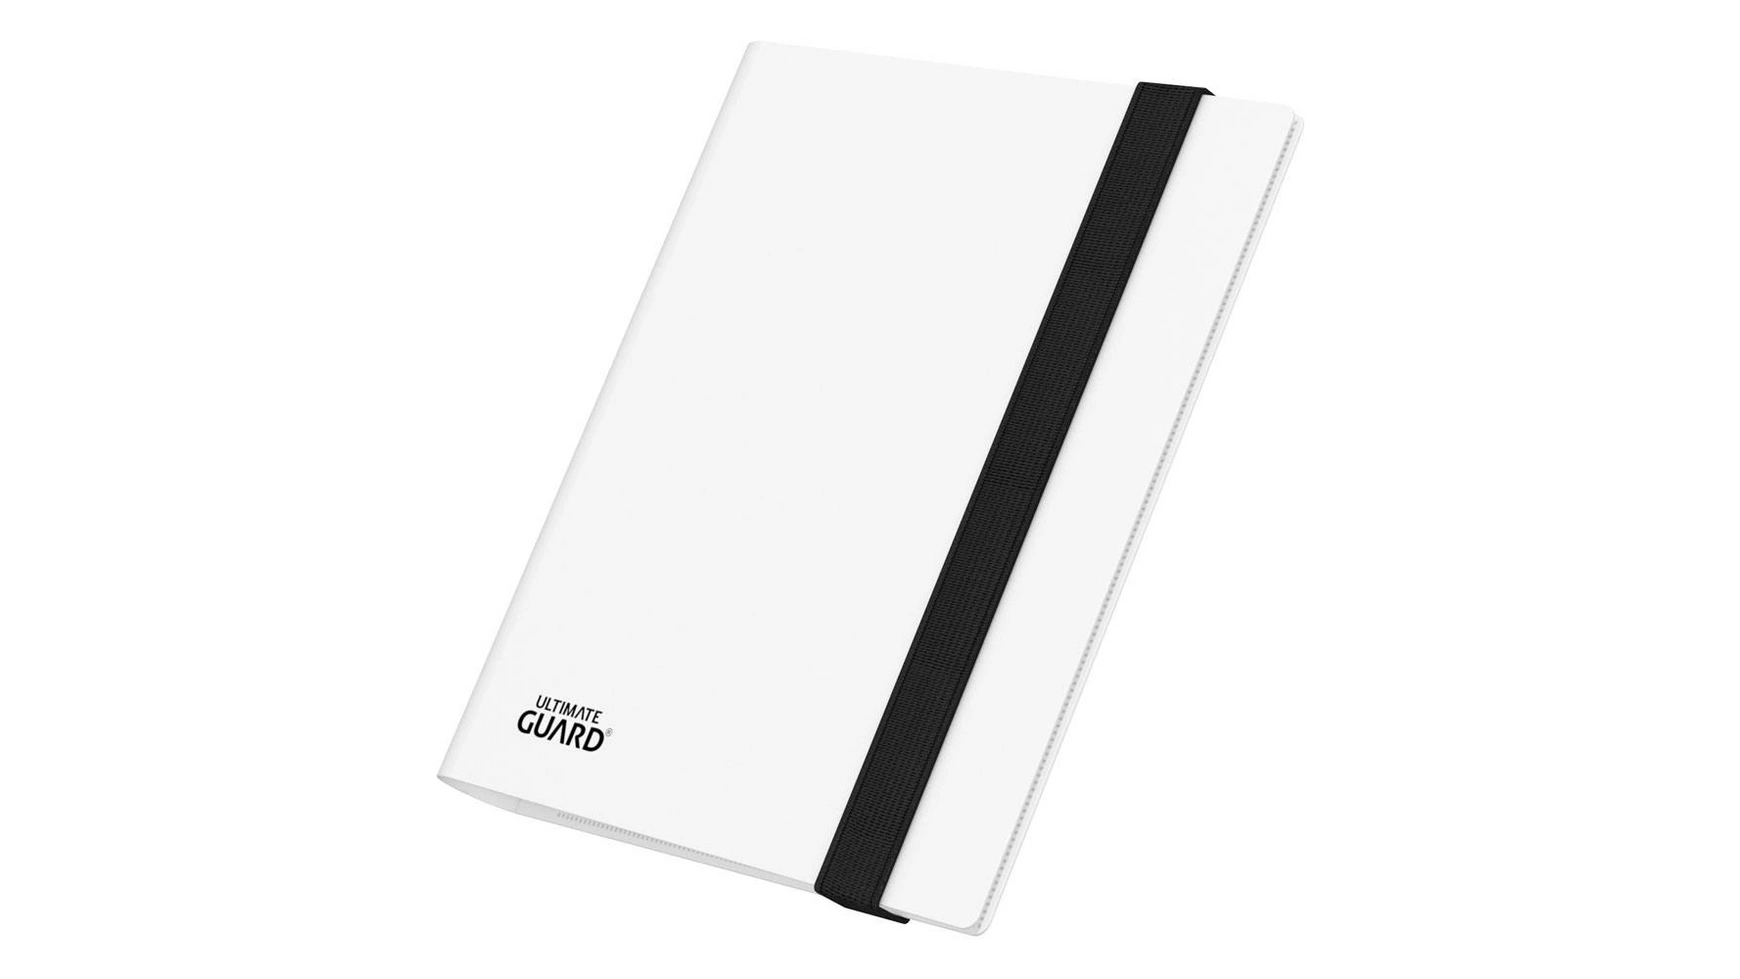 Ultimate Guard Flexxfolio 160 8 карманов, белый кожаная обложка для журнала папка для карточек папка органайзер a6 обложка органайзер обложка для офисного блокнота 5 шт